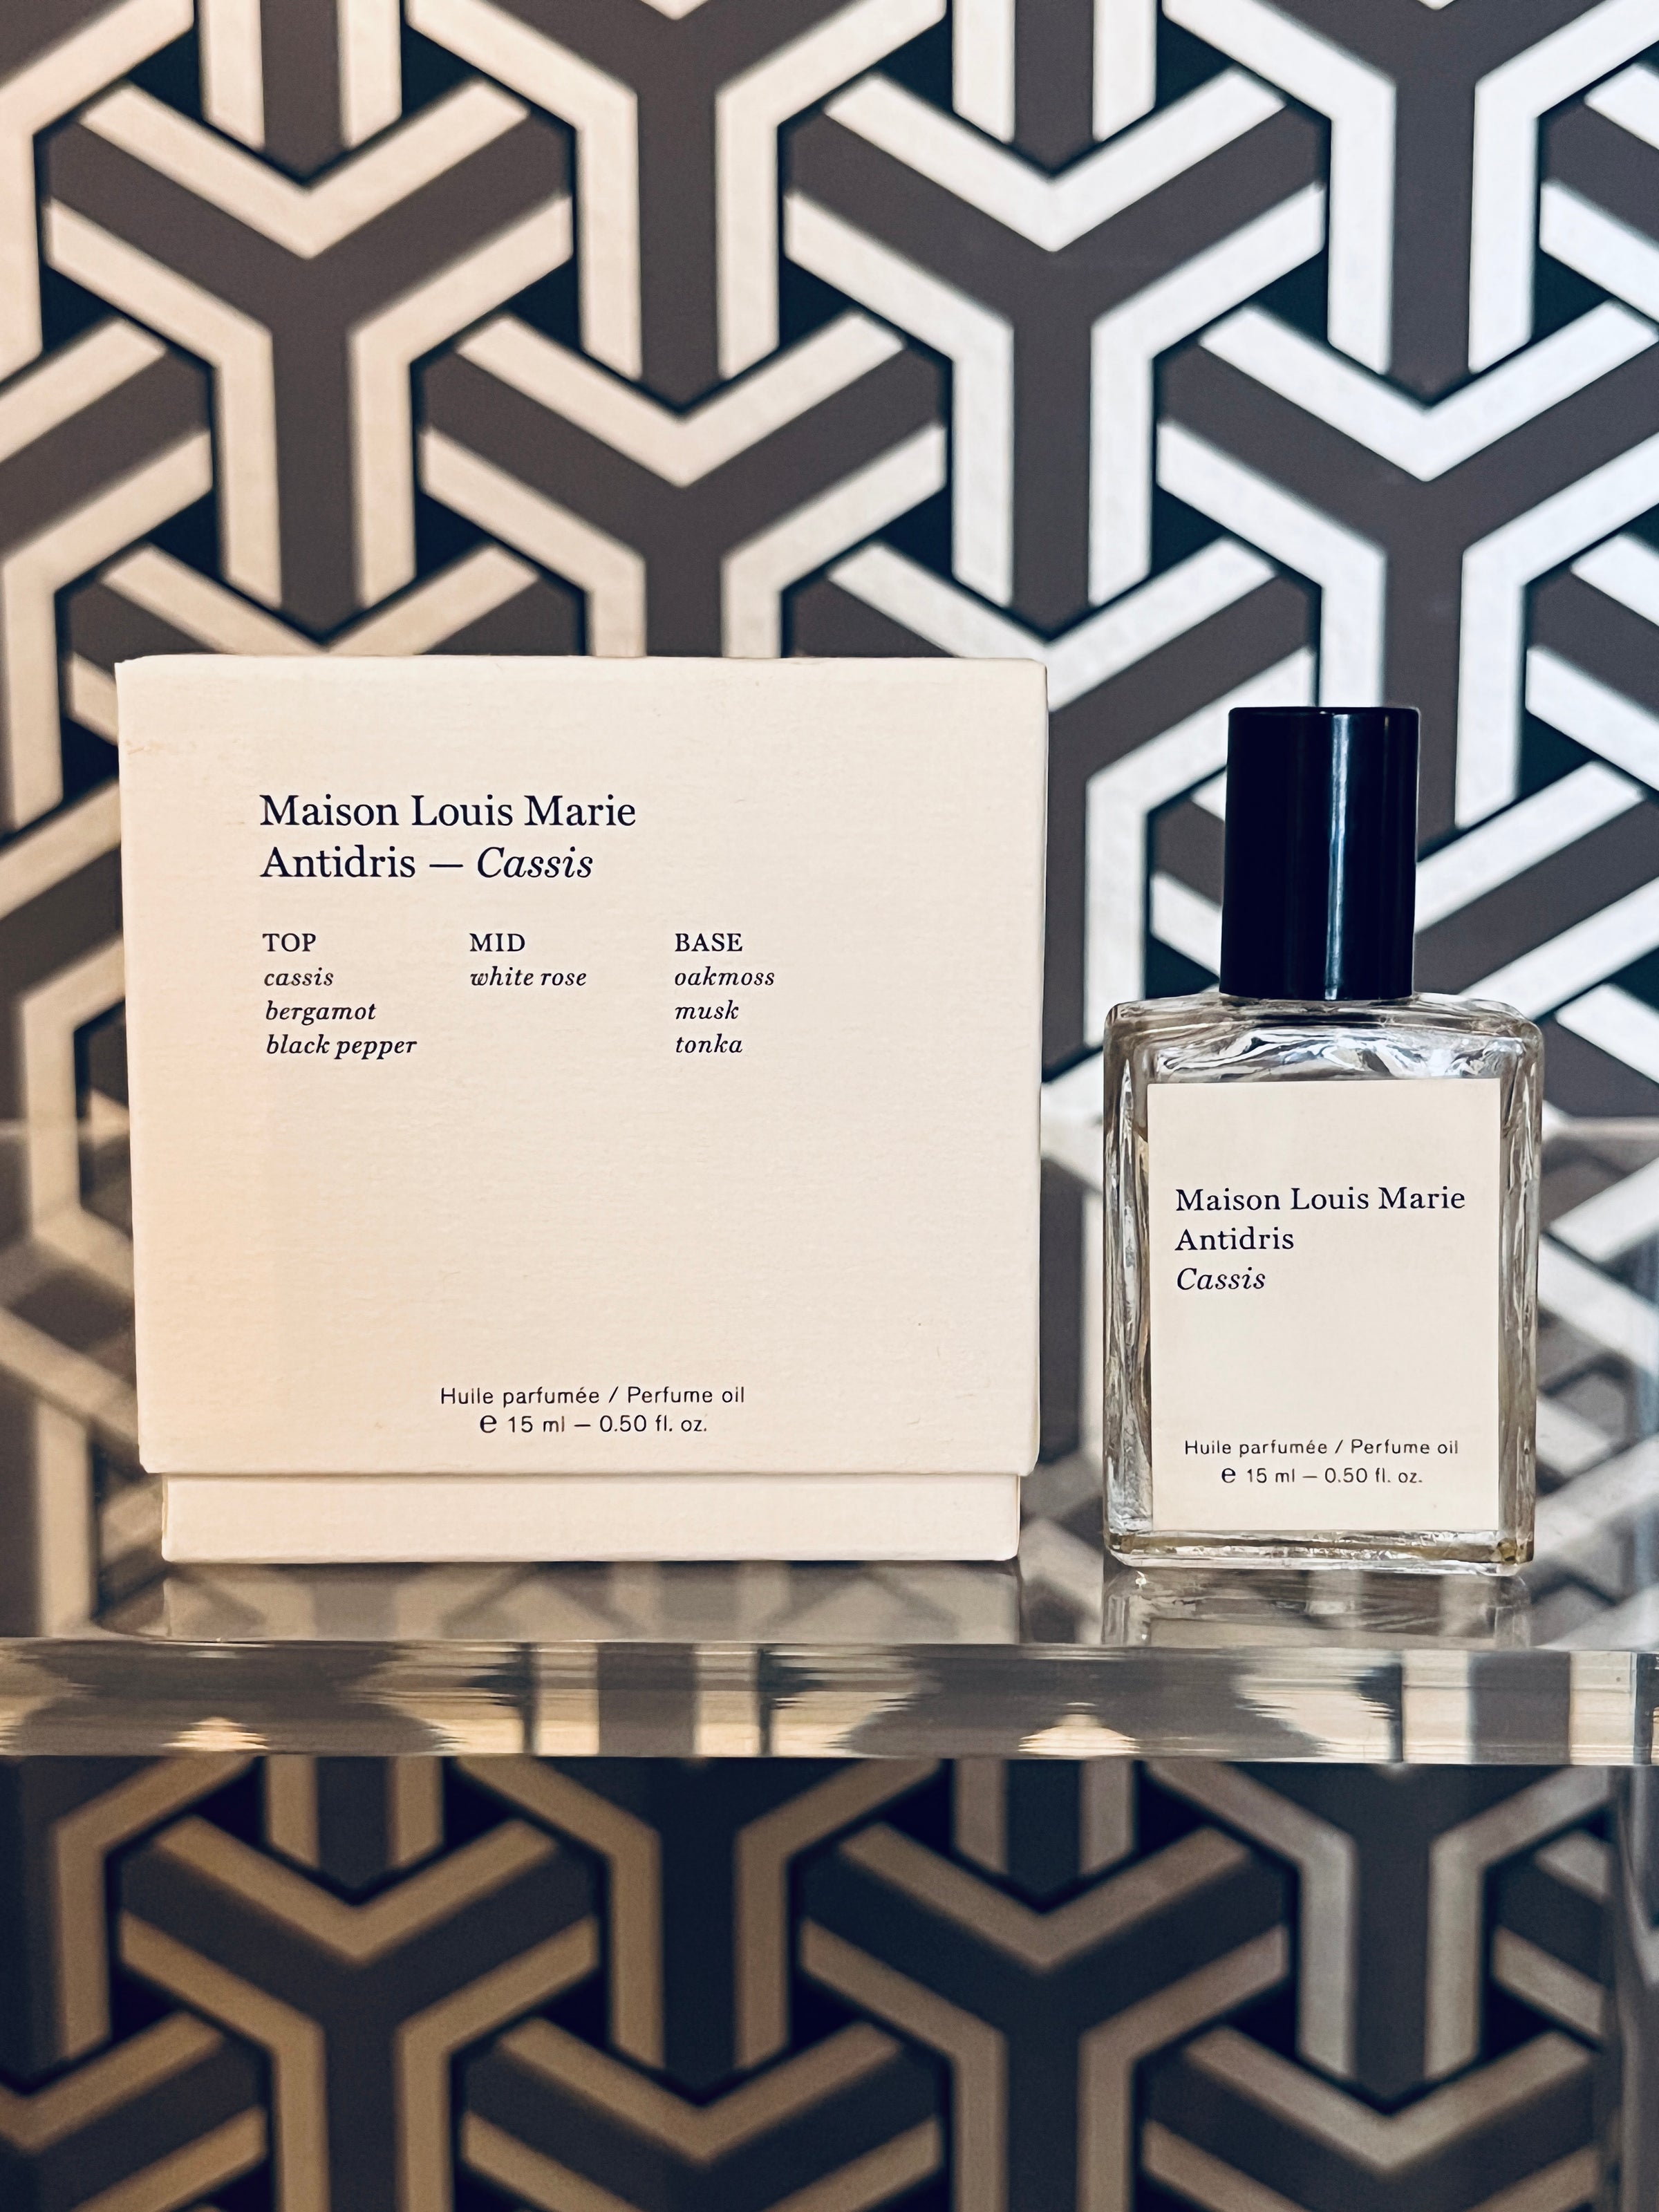 No.03 L'Etang Noir Perfume Oil - Maison Louis Marie